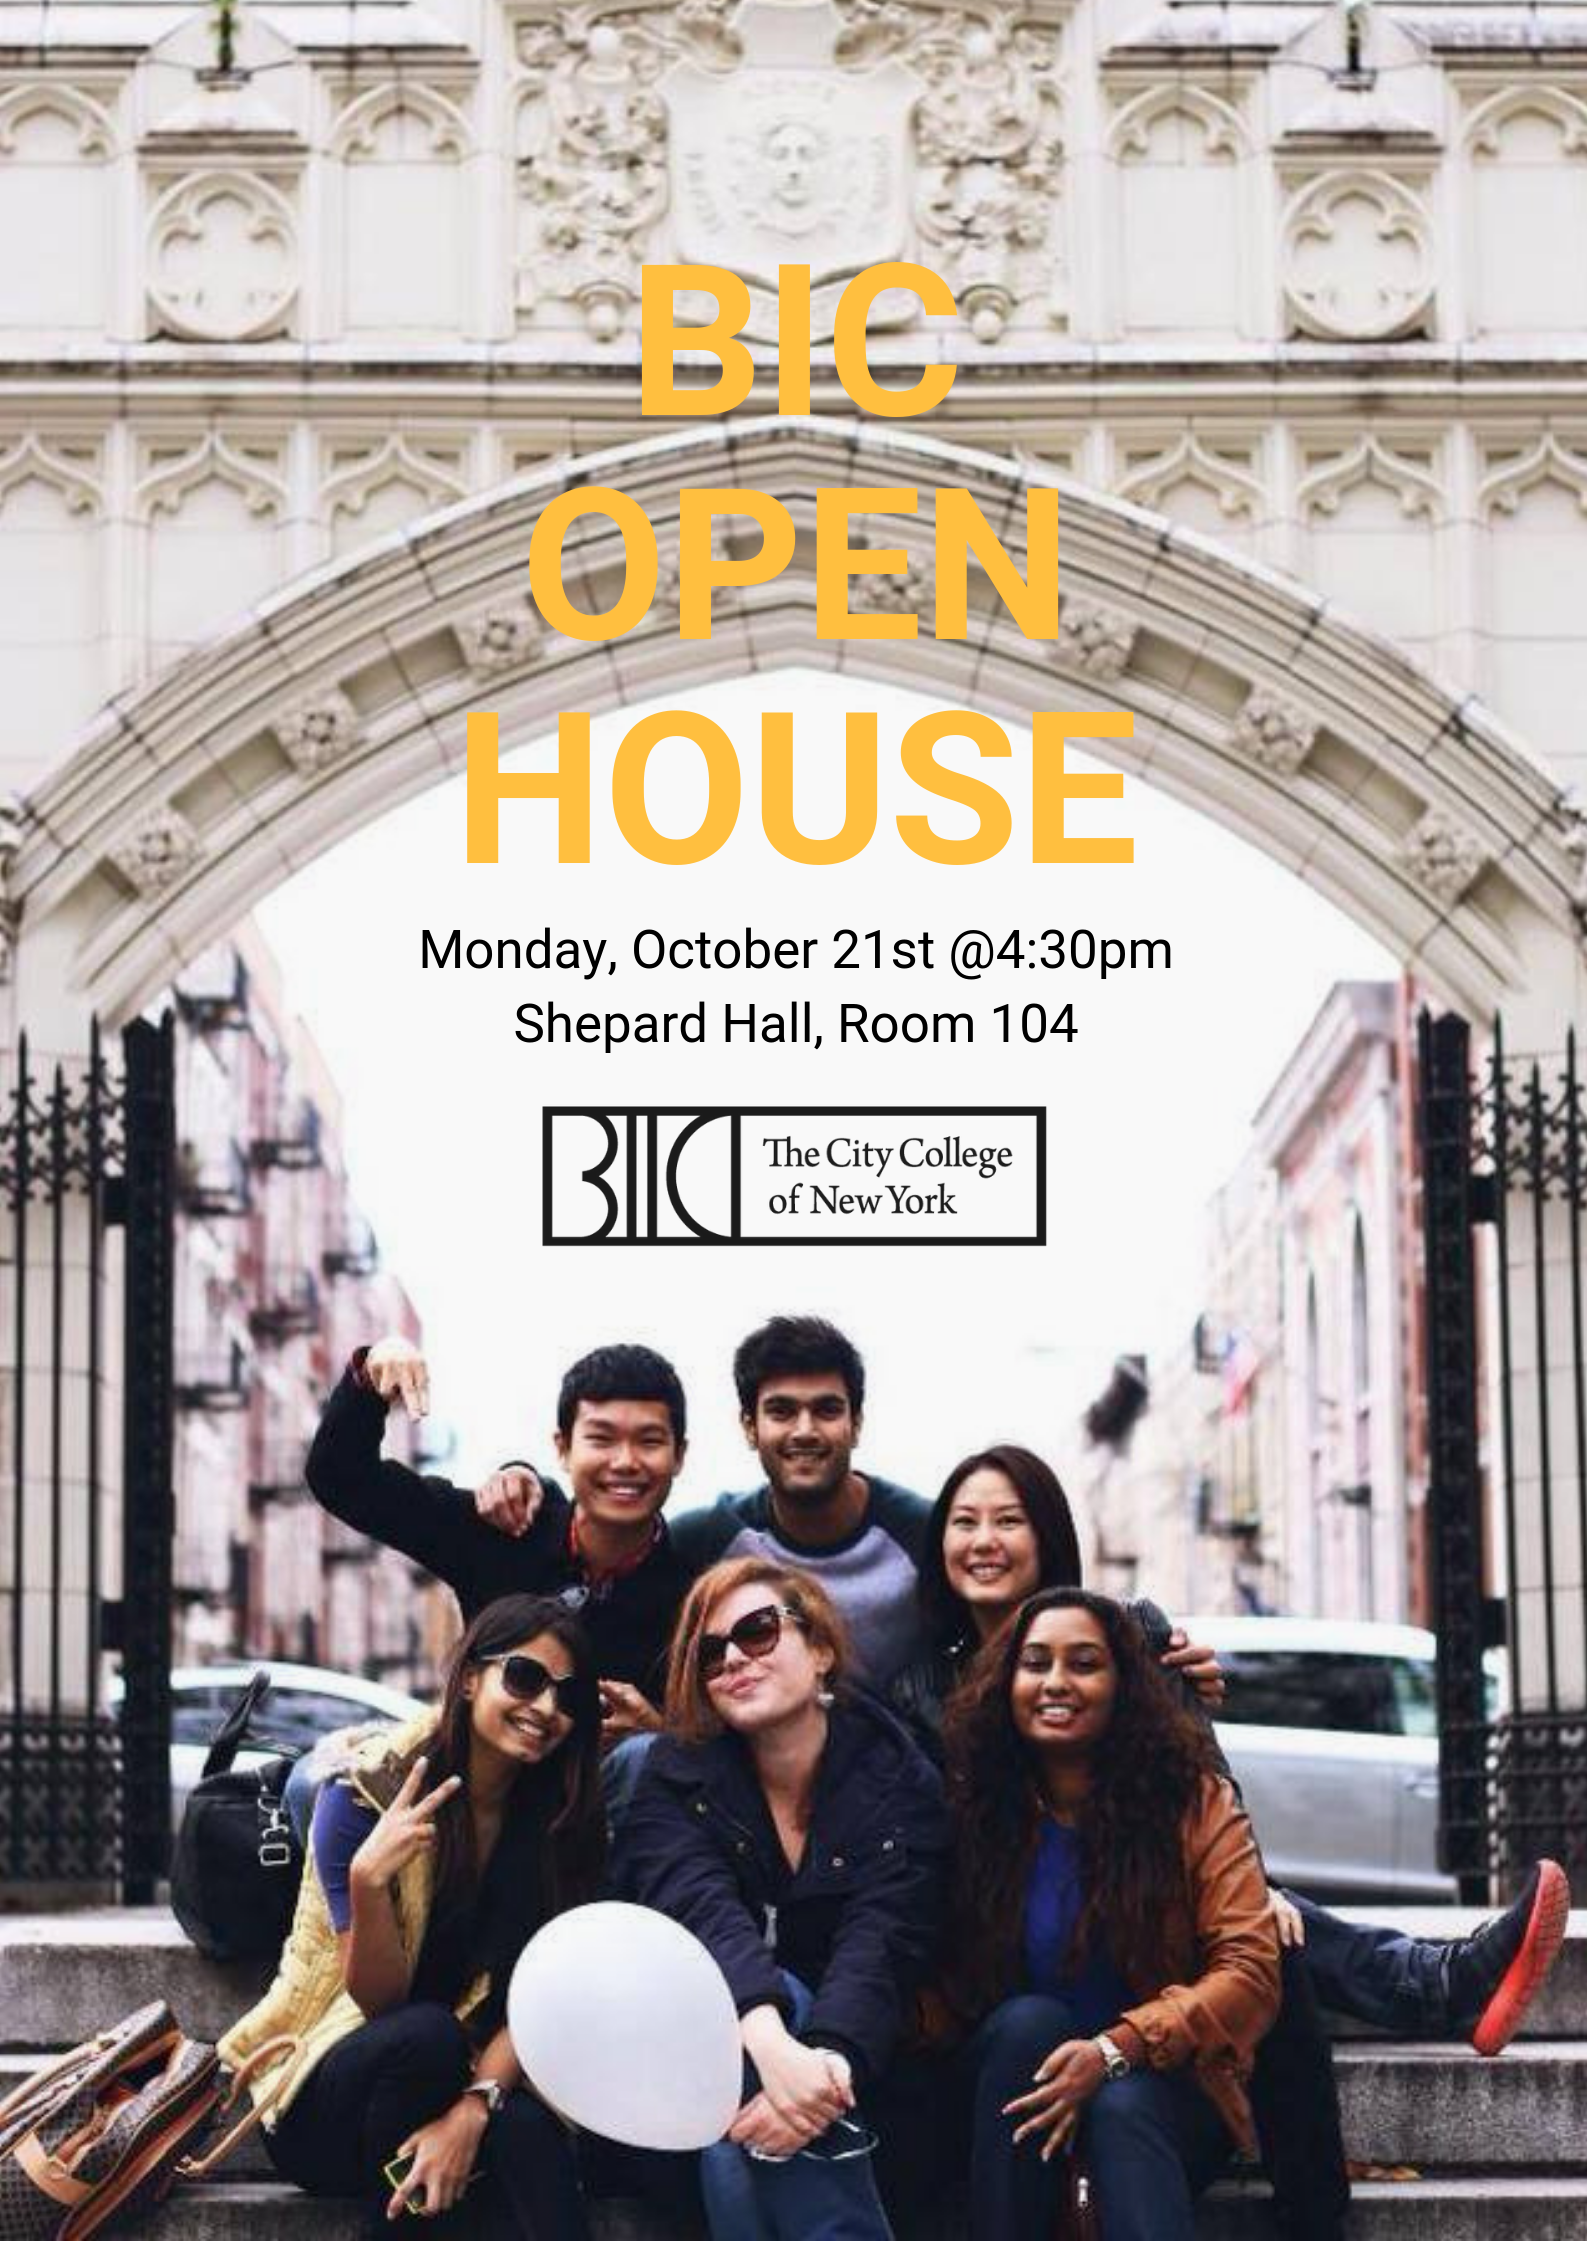 BIC Open House Mon. 10/21 4:30pm